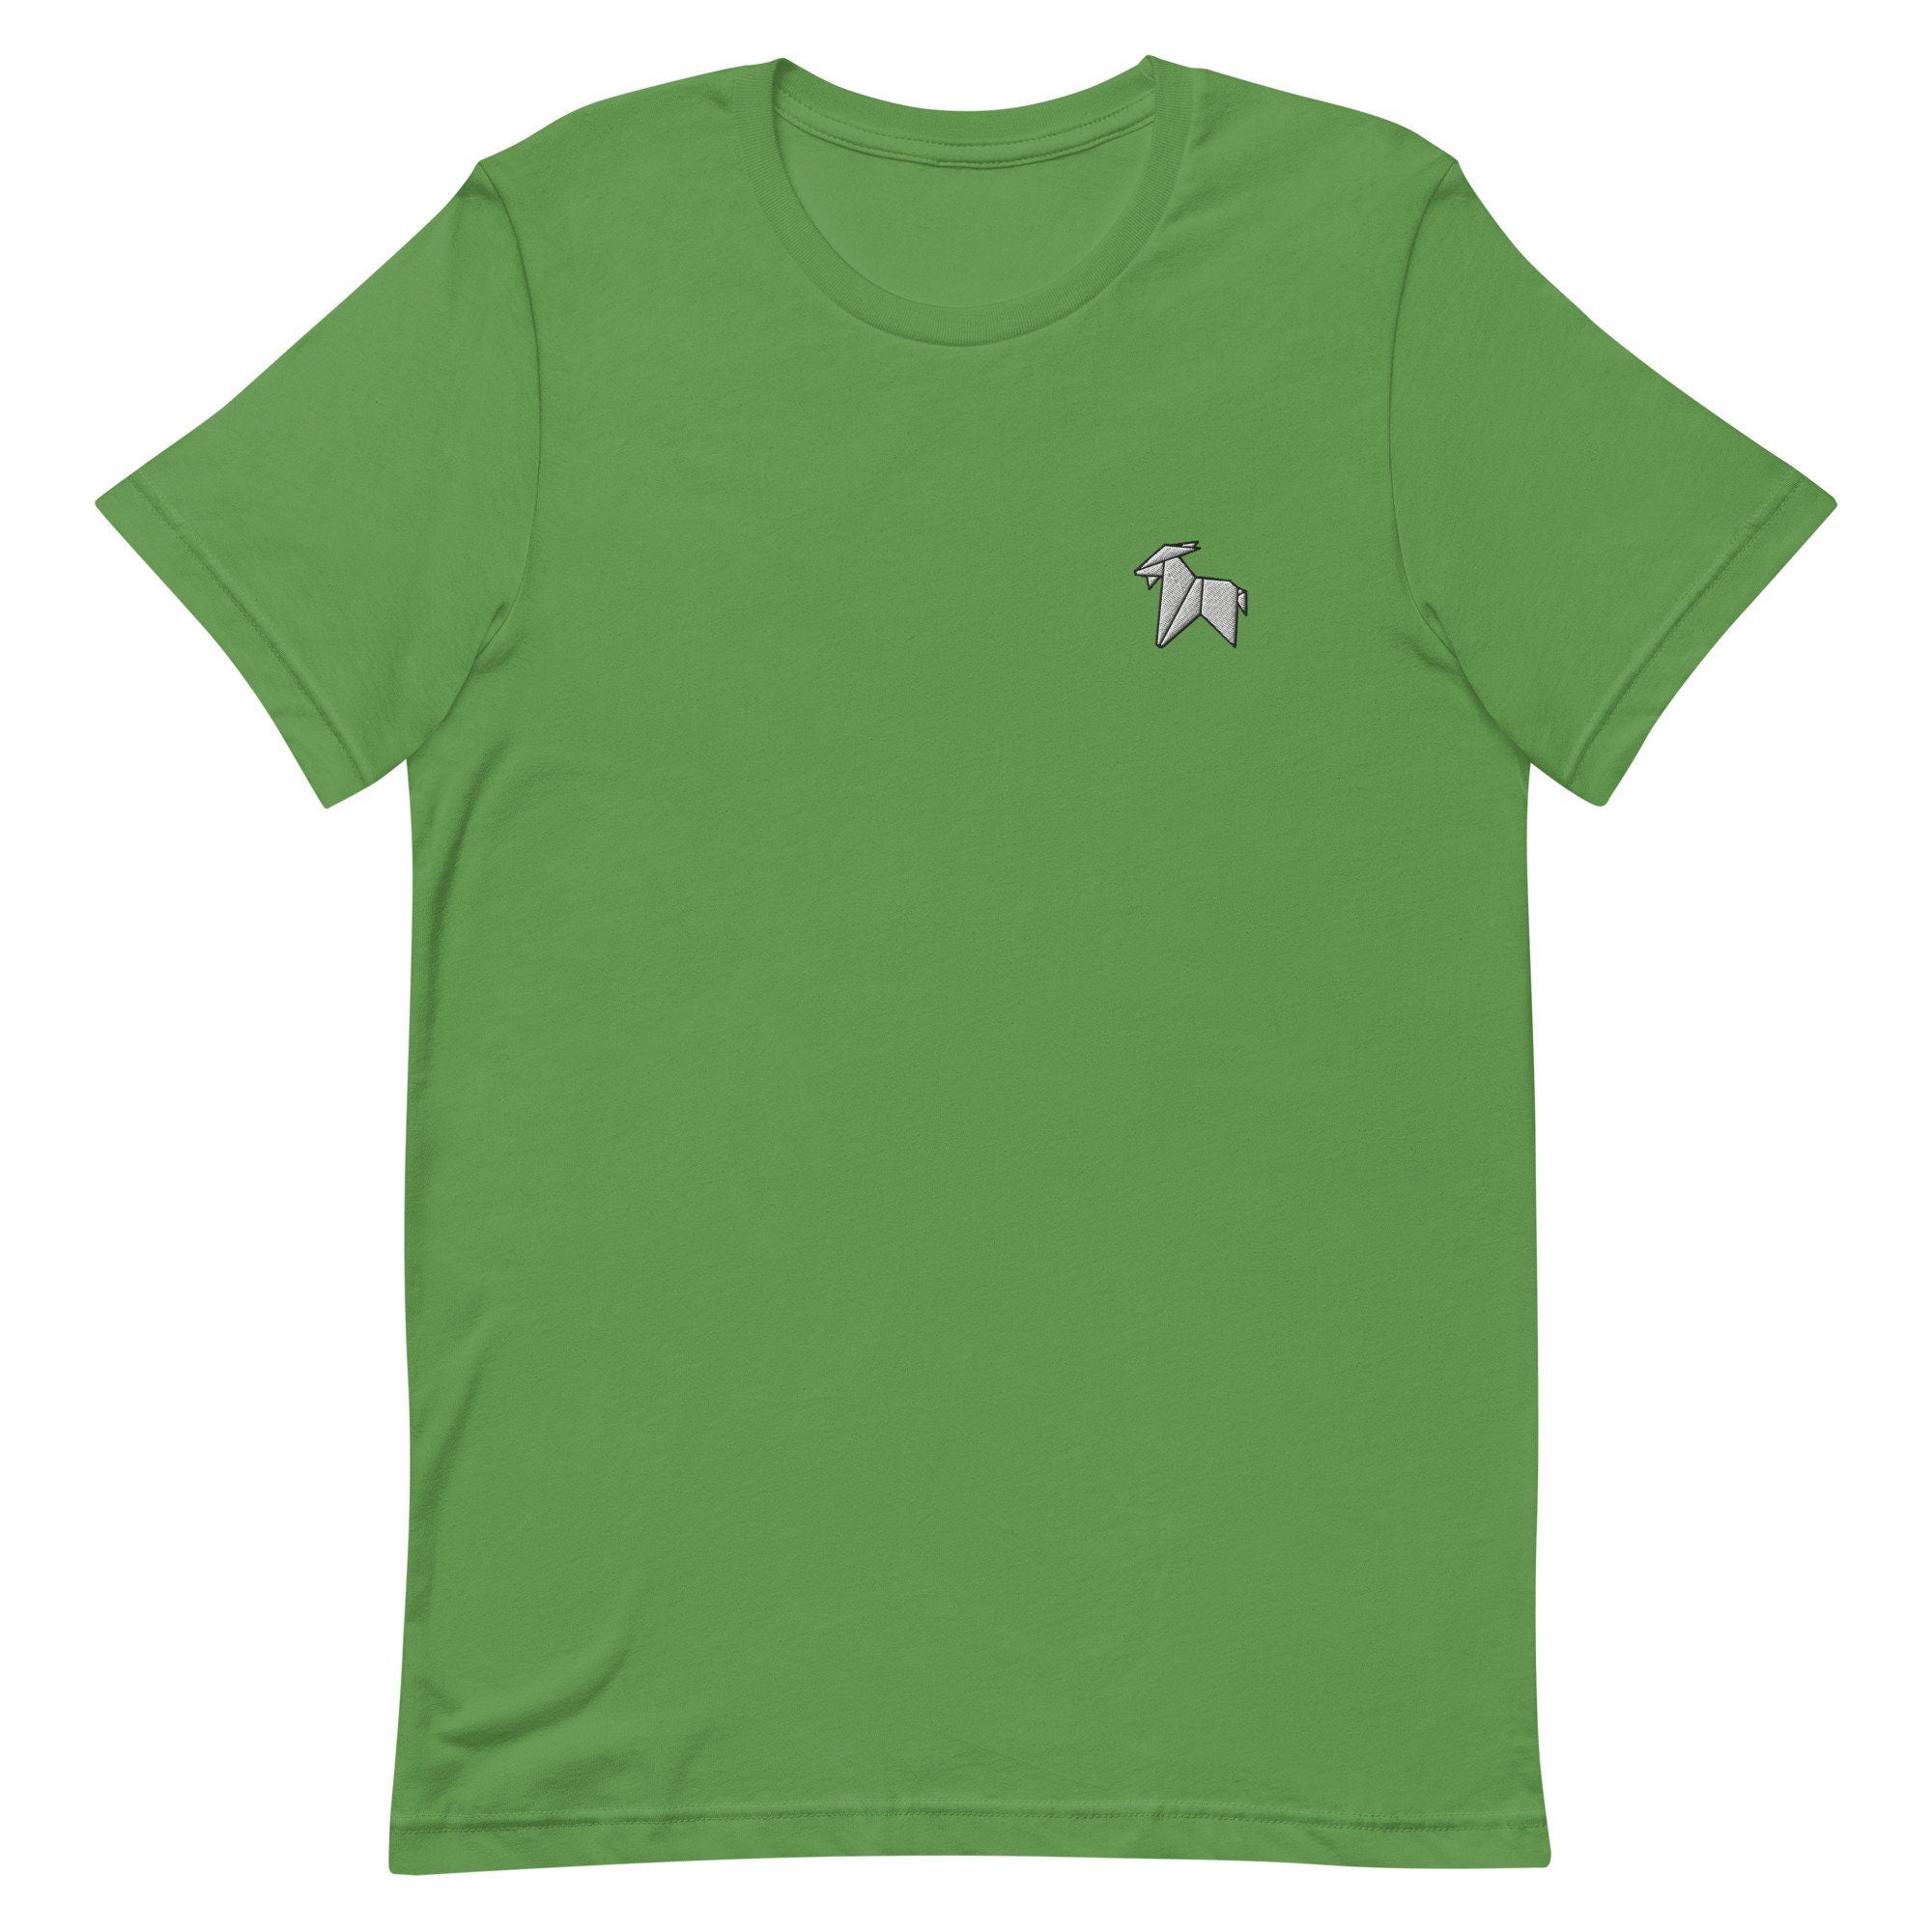 Origami Goat Premium Men's T-Shirt, Embroidered Men's T-Shirt Gift for Boyfriend, Men's Short Sleeve Shirt - Multiple Colors